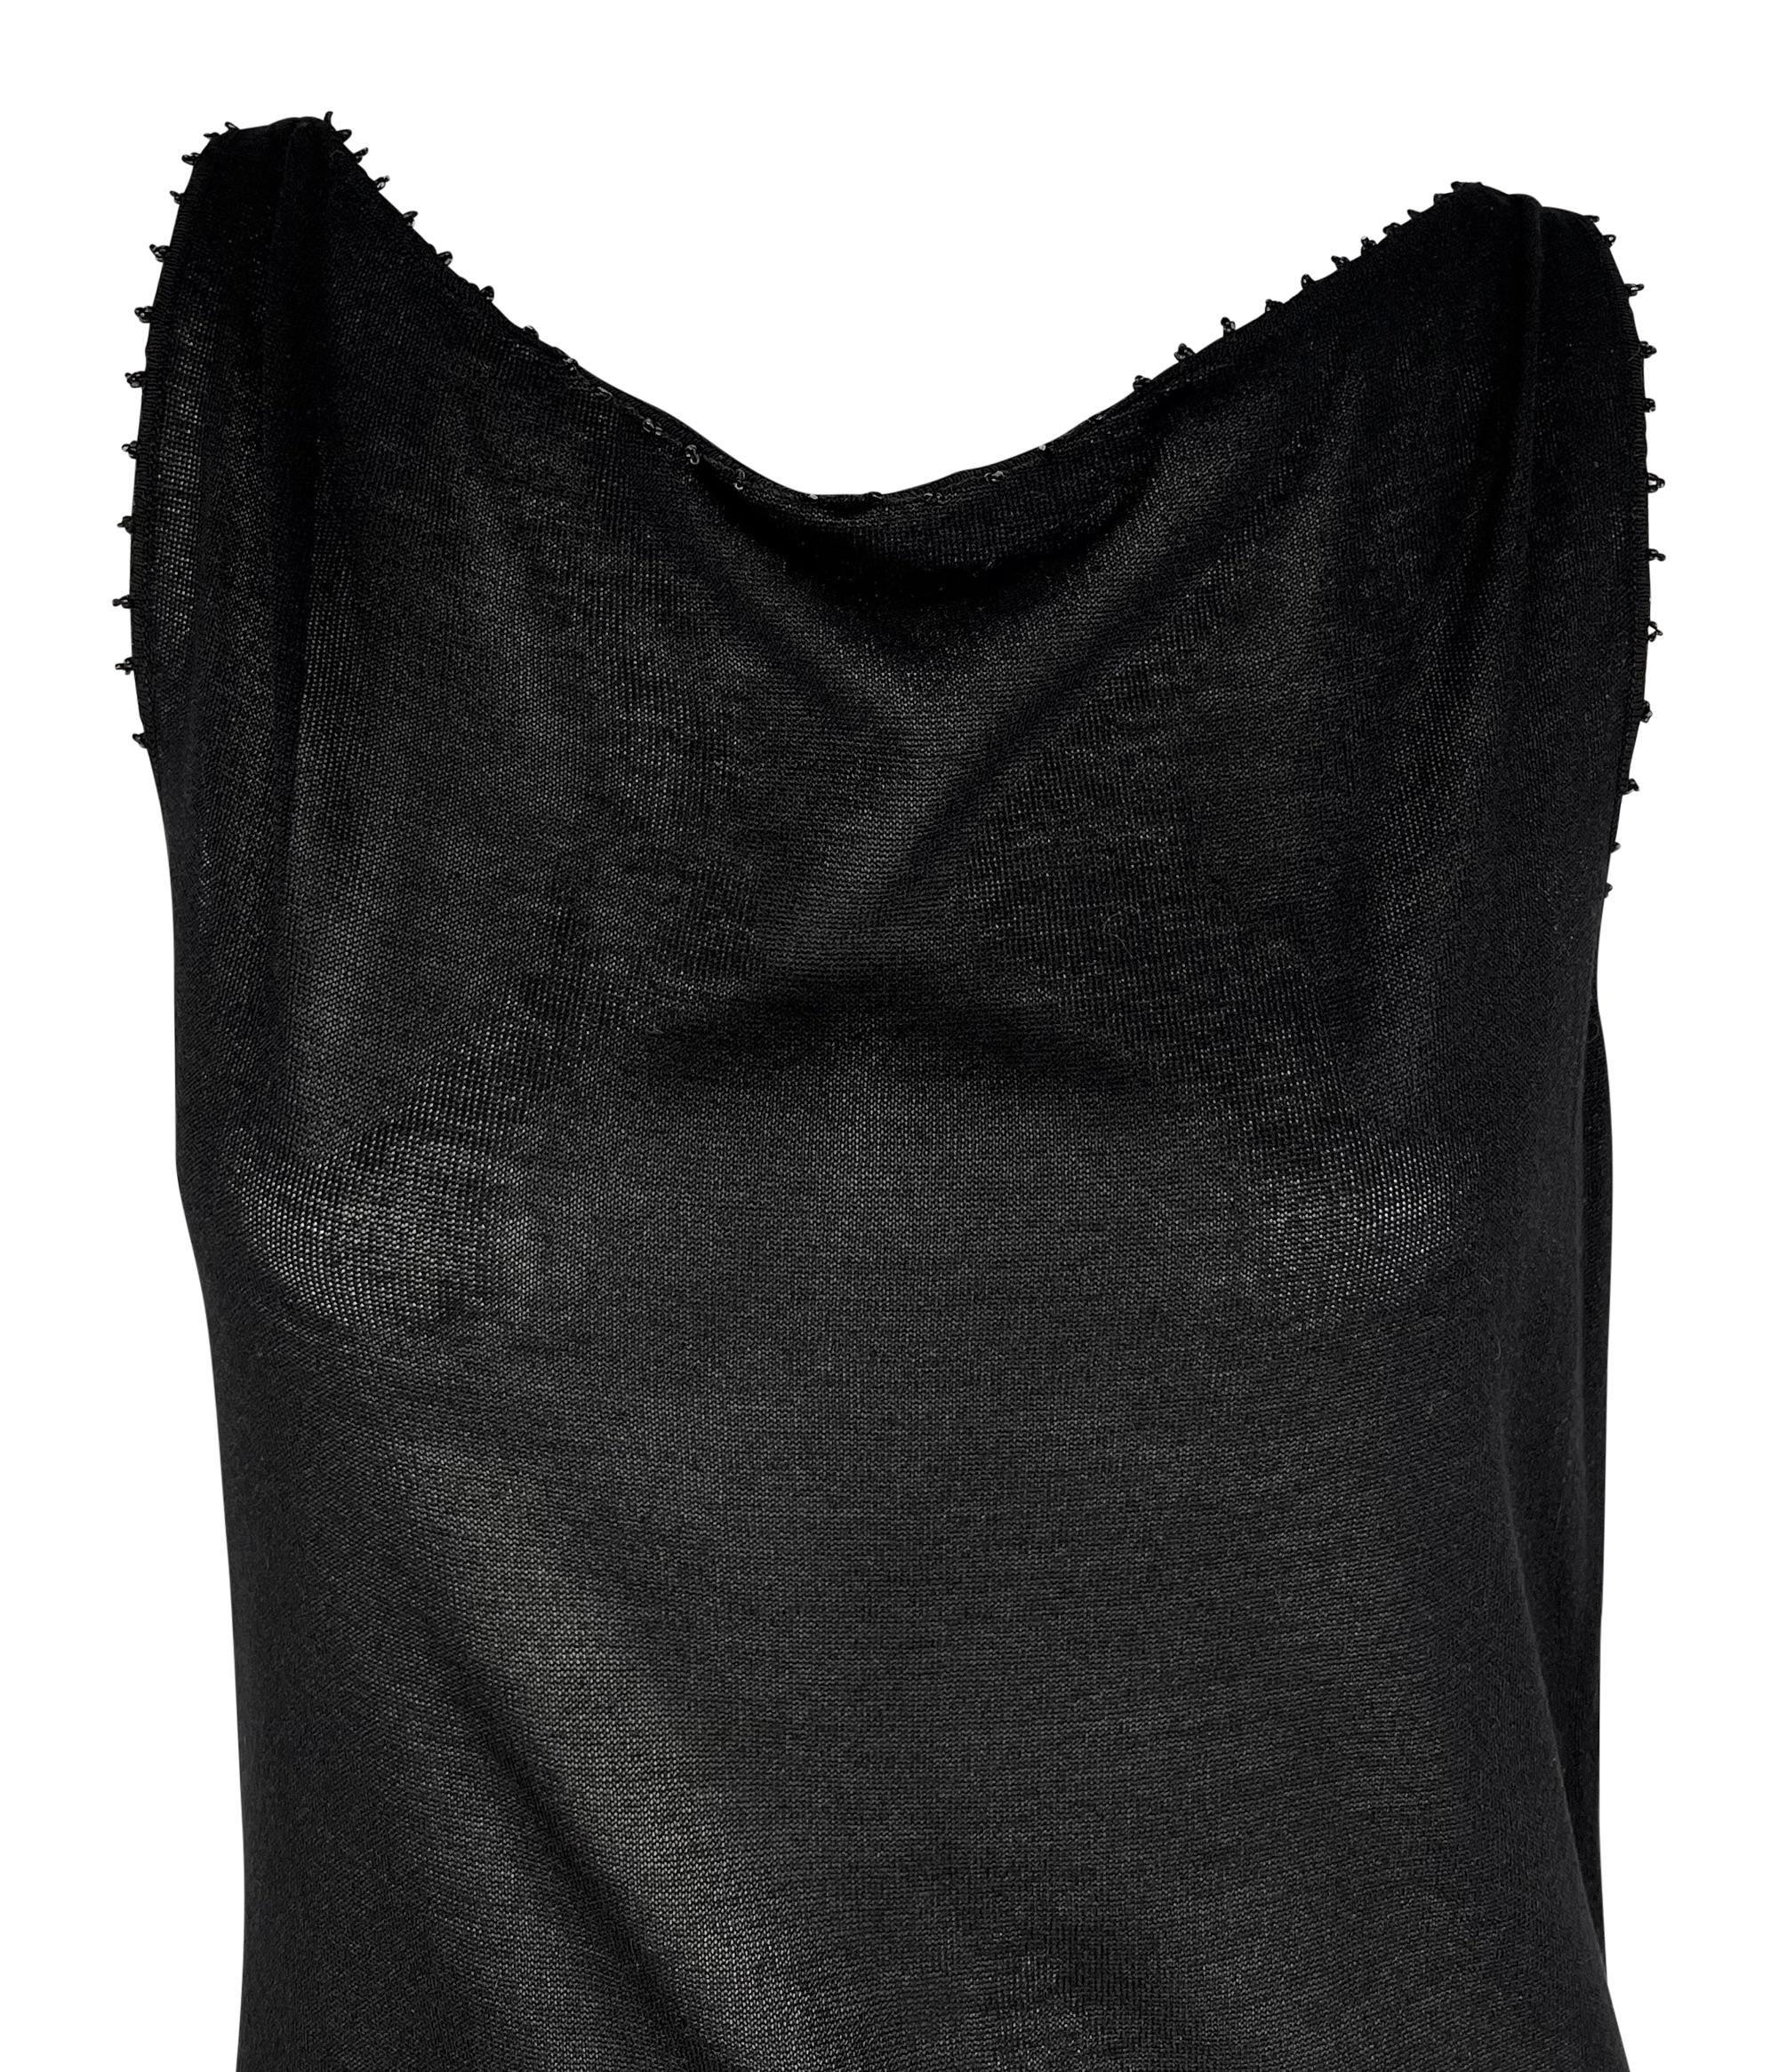 Agrémentée de perles de caviar noires au niveau de l'encolure et des manches, cette robe noire en maille Gucci by Tom Ford n'a jamais été portée et est livrée avec ses étiquettes d'origine. Cette mini robe de la collection Printemps/Eté 1999